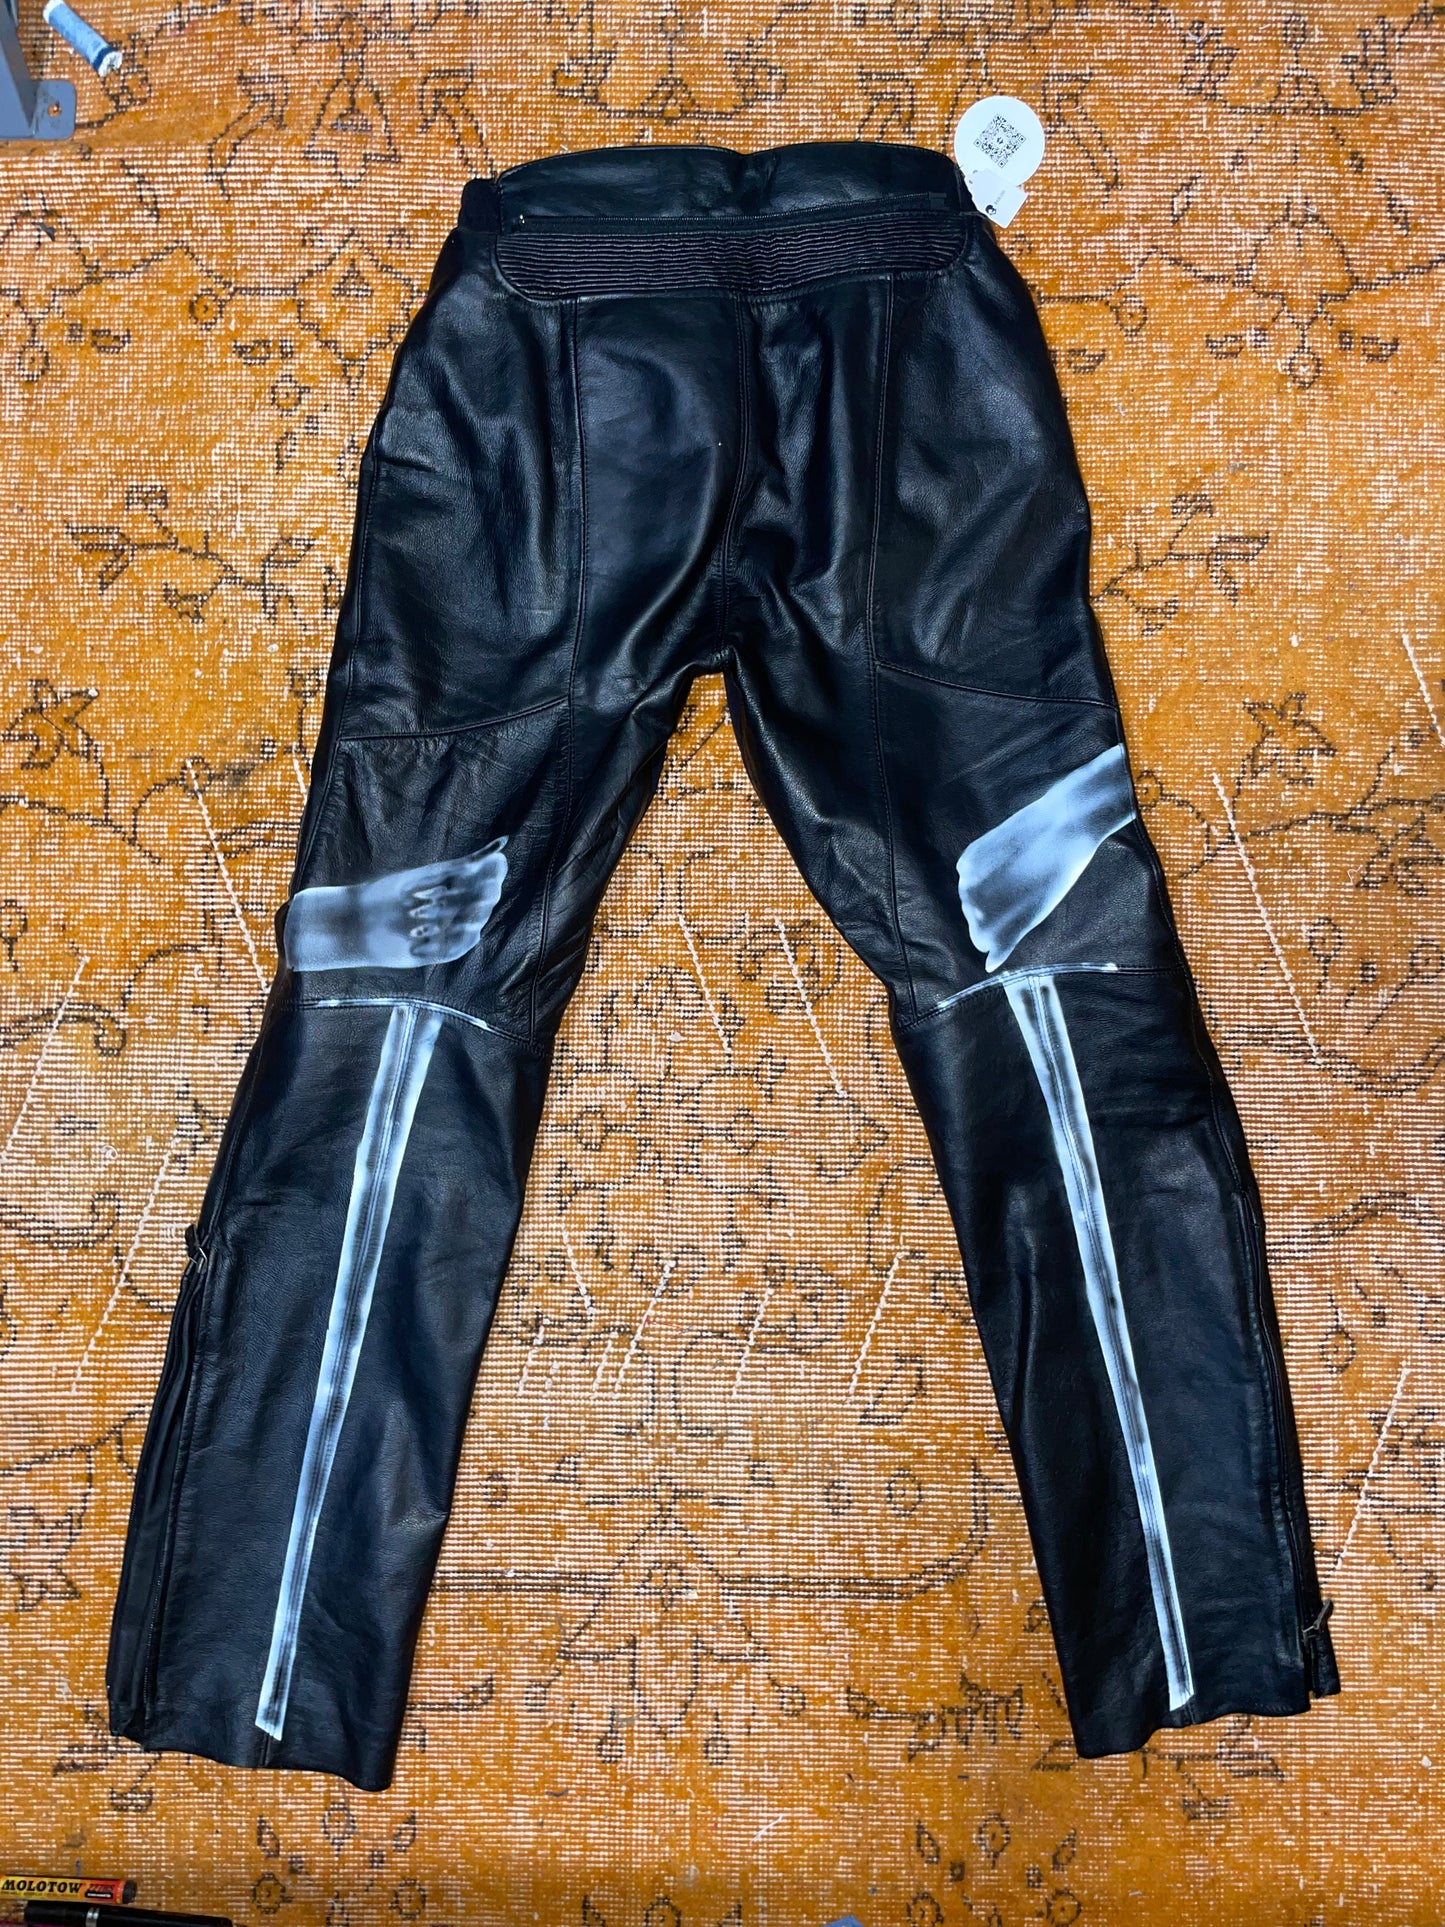 BIBI Blade Leather Moto Pants